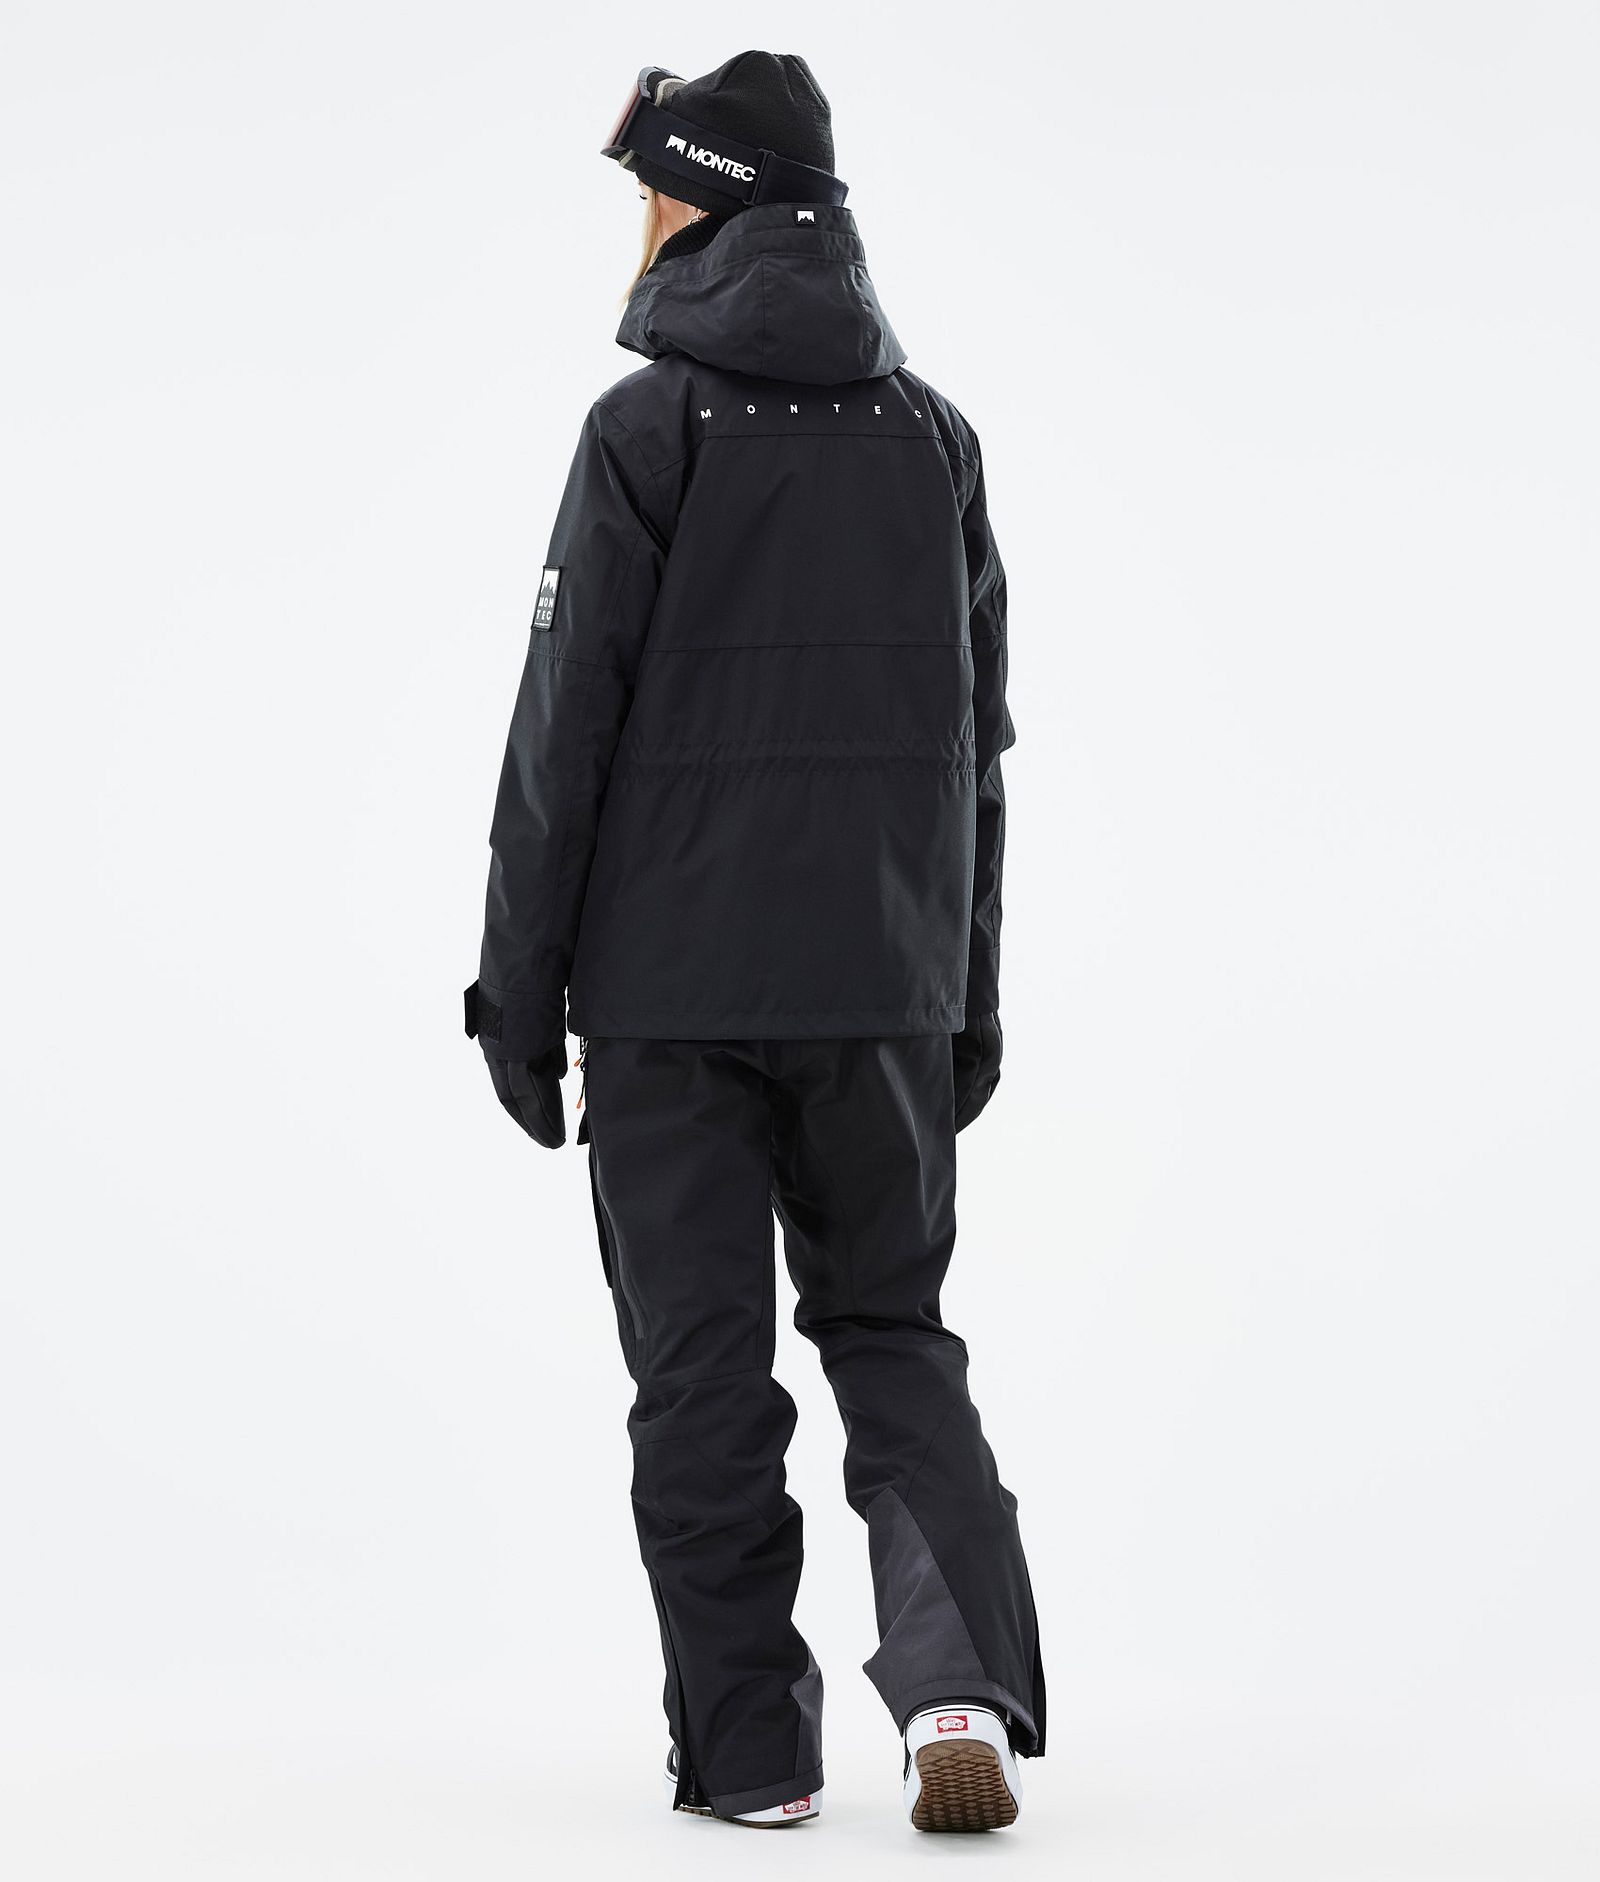 Montec Doom W Outfit Snowboardowy Kobiety Black, Image 2 of 2